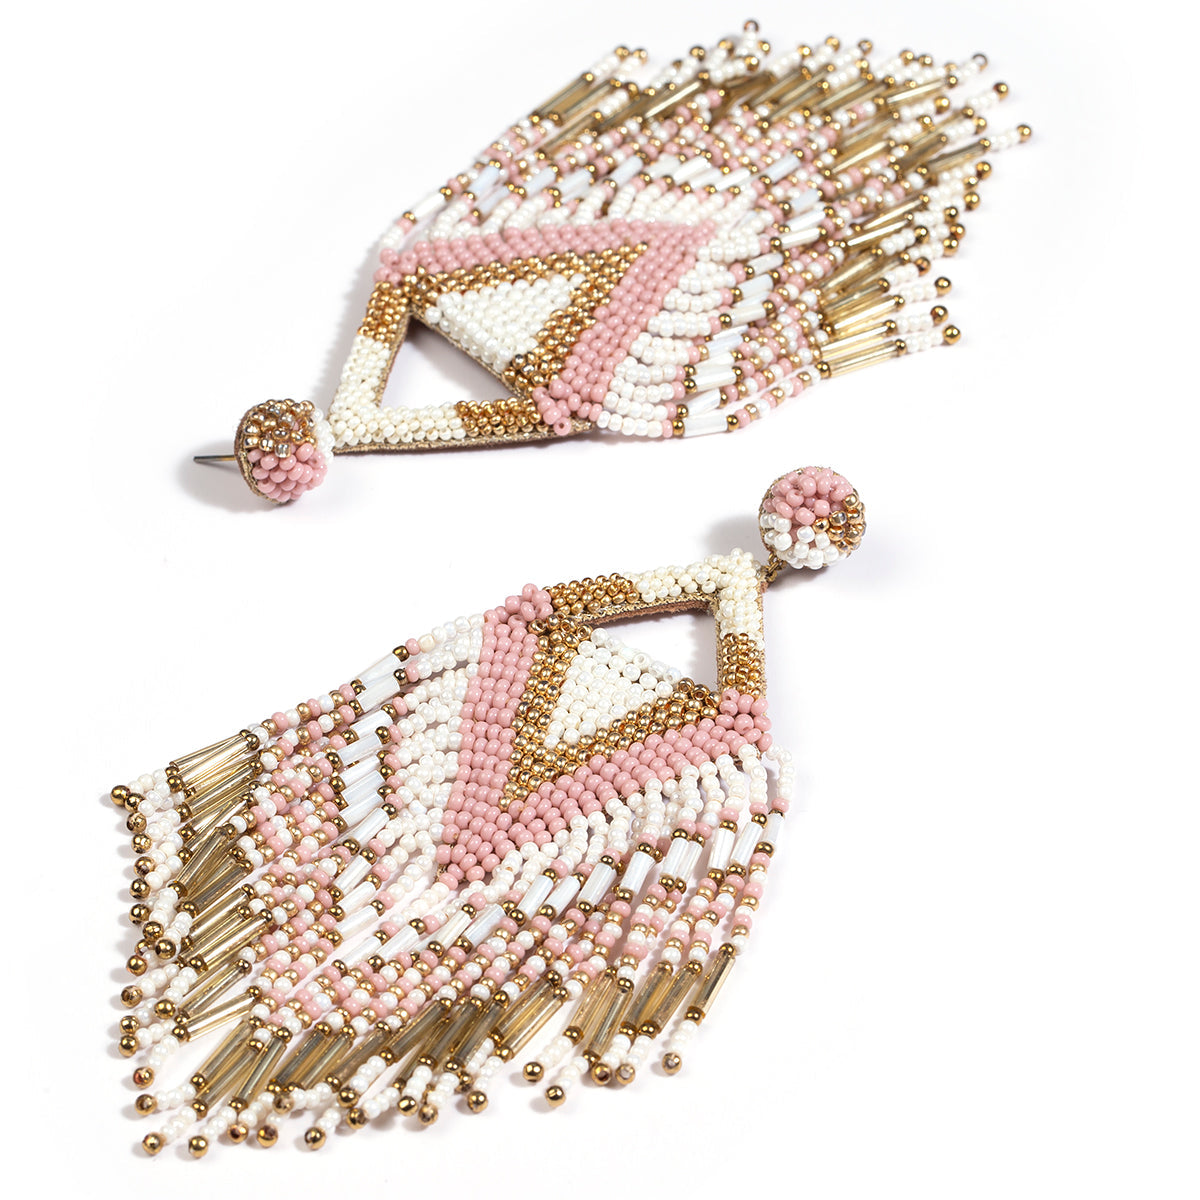 Handmade beaded chandelier earrings in dusty pink